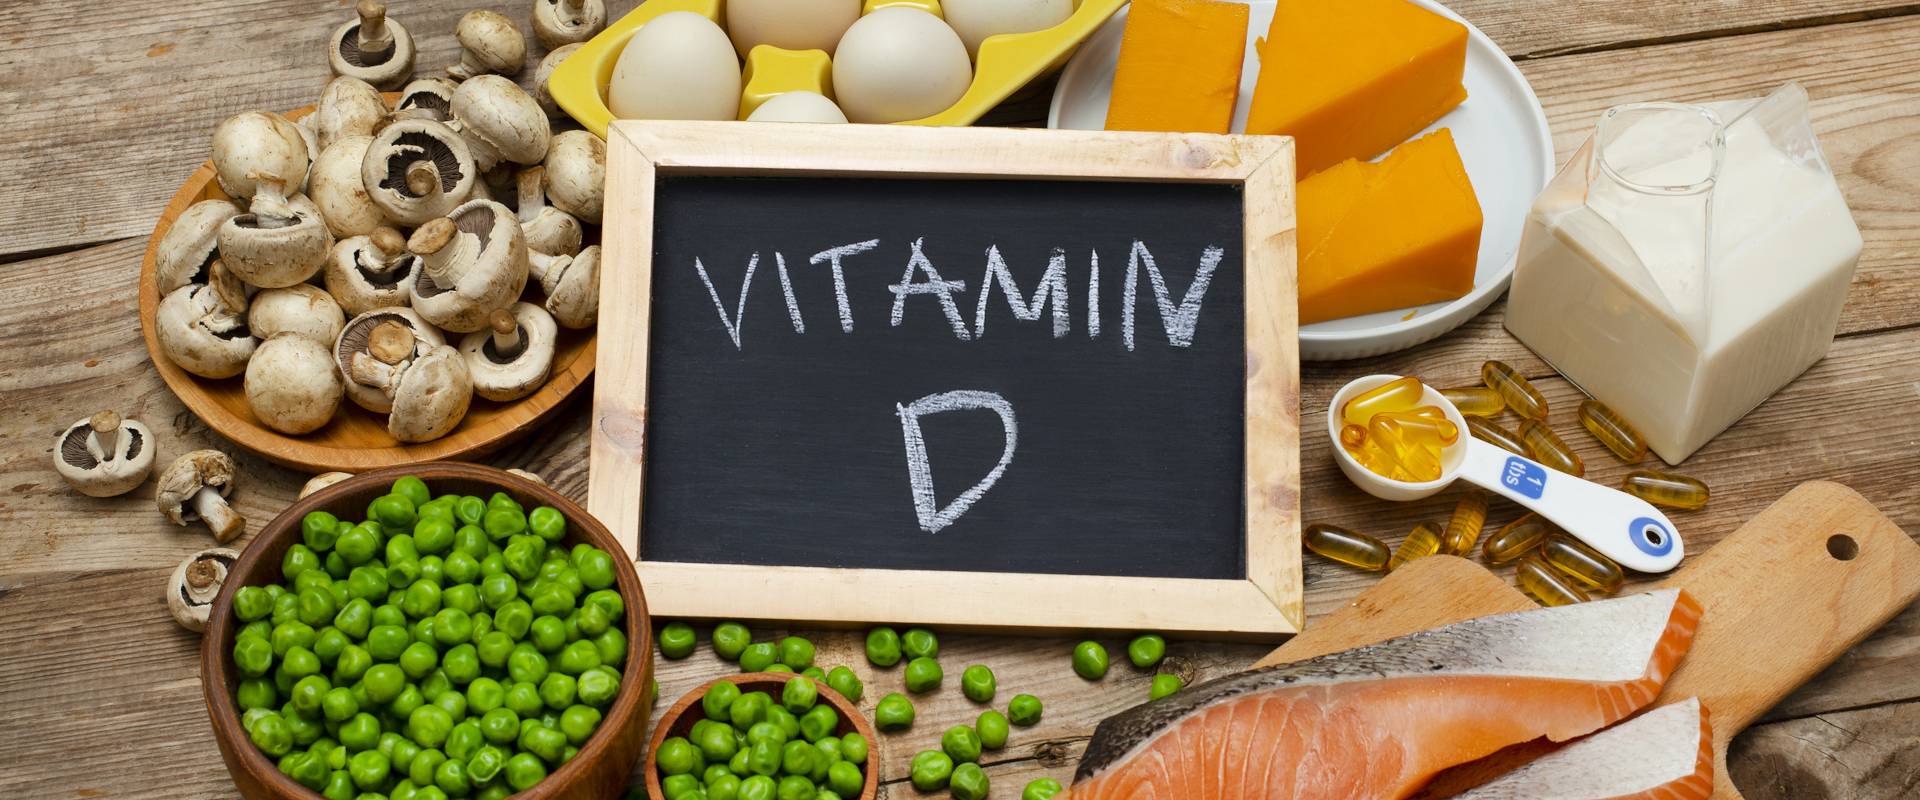 D3-vitamin szerepe, adagolása, túladagolása - magzsola.hu